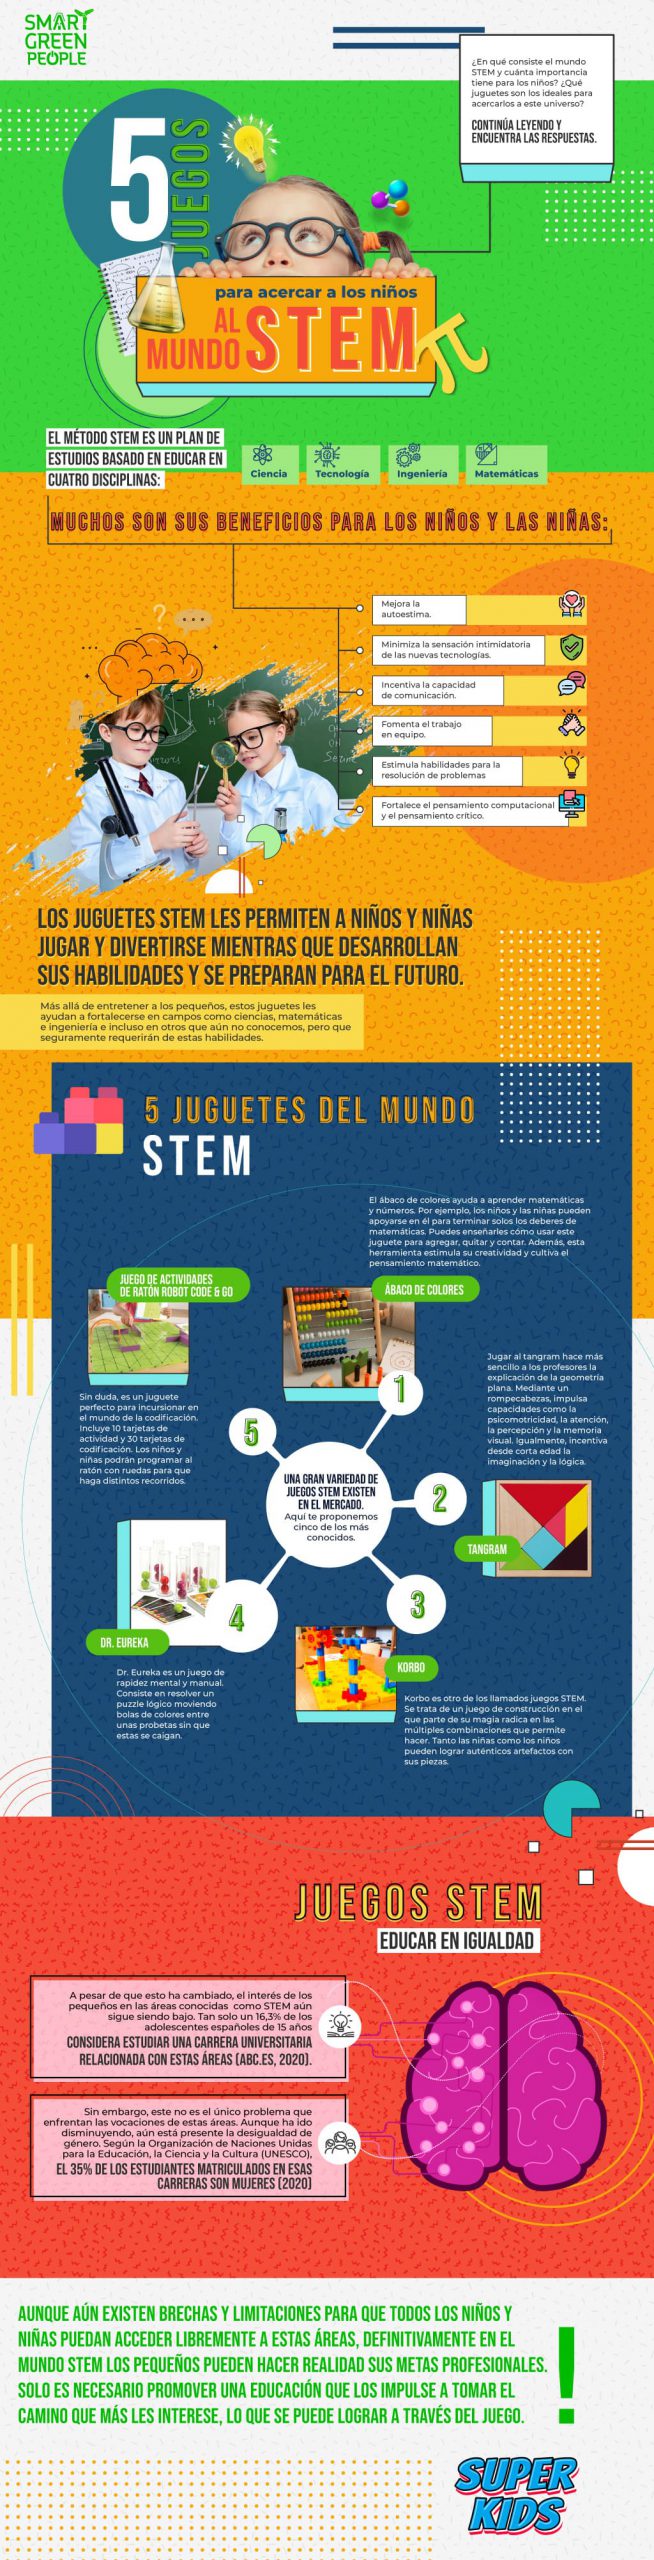 STEM: juegos para impulsar la inteligencia de los niños | smartgreen